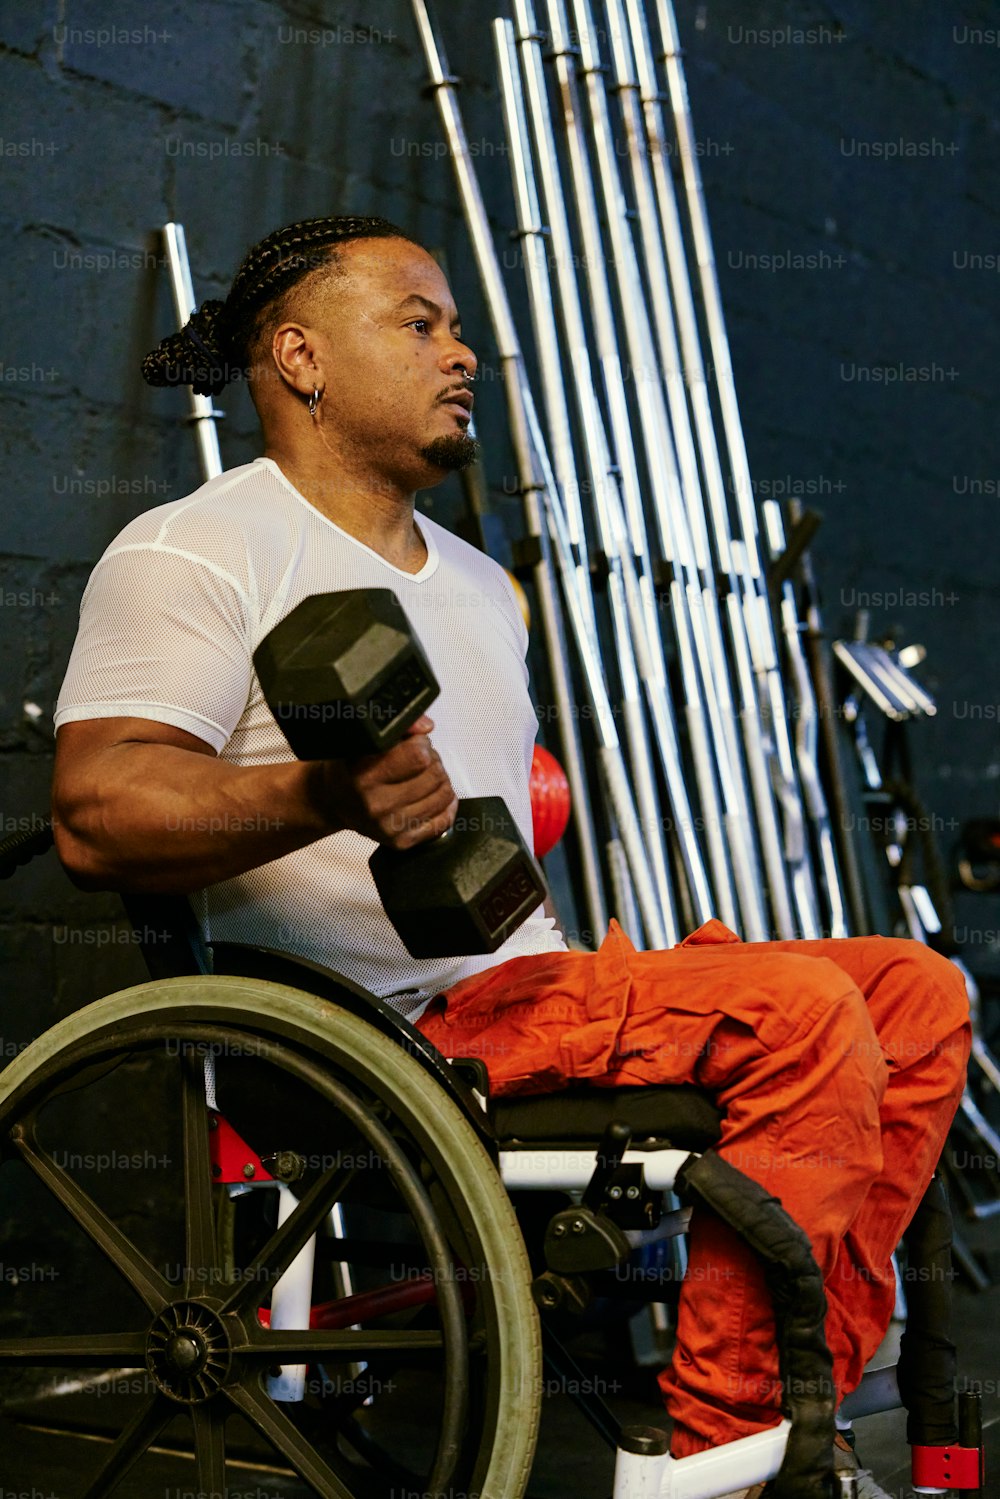 Un hombre sentado en una silla de ruedas sosteniendo un par de mancuernas